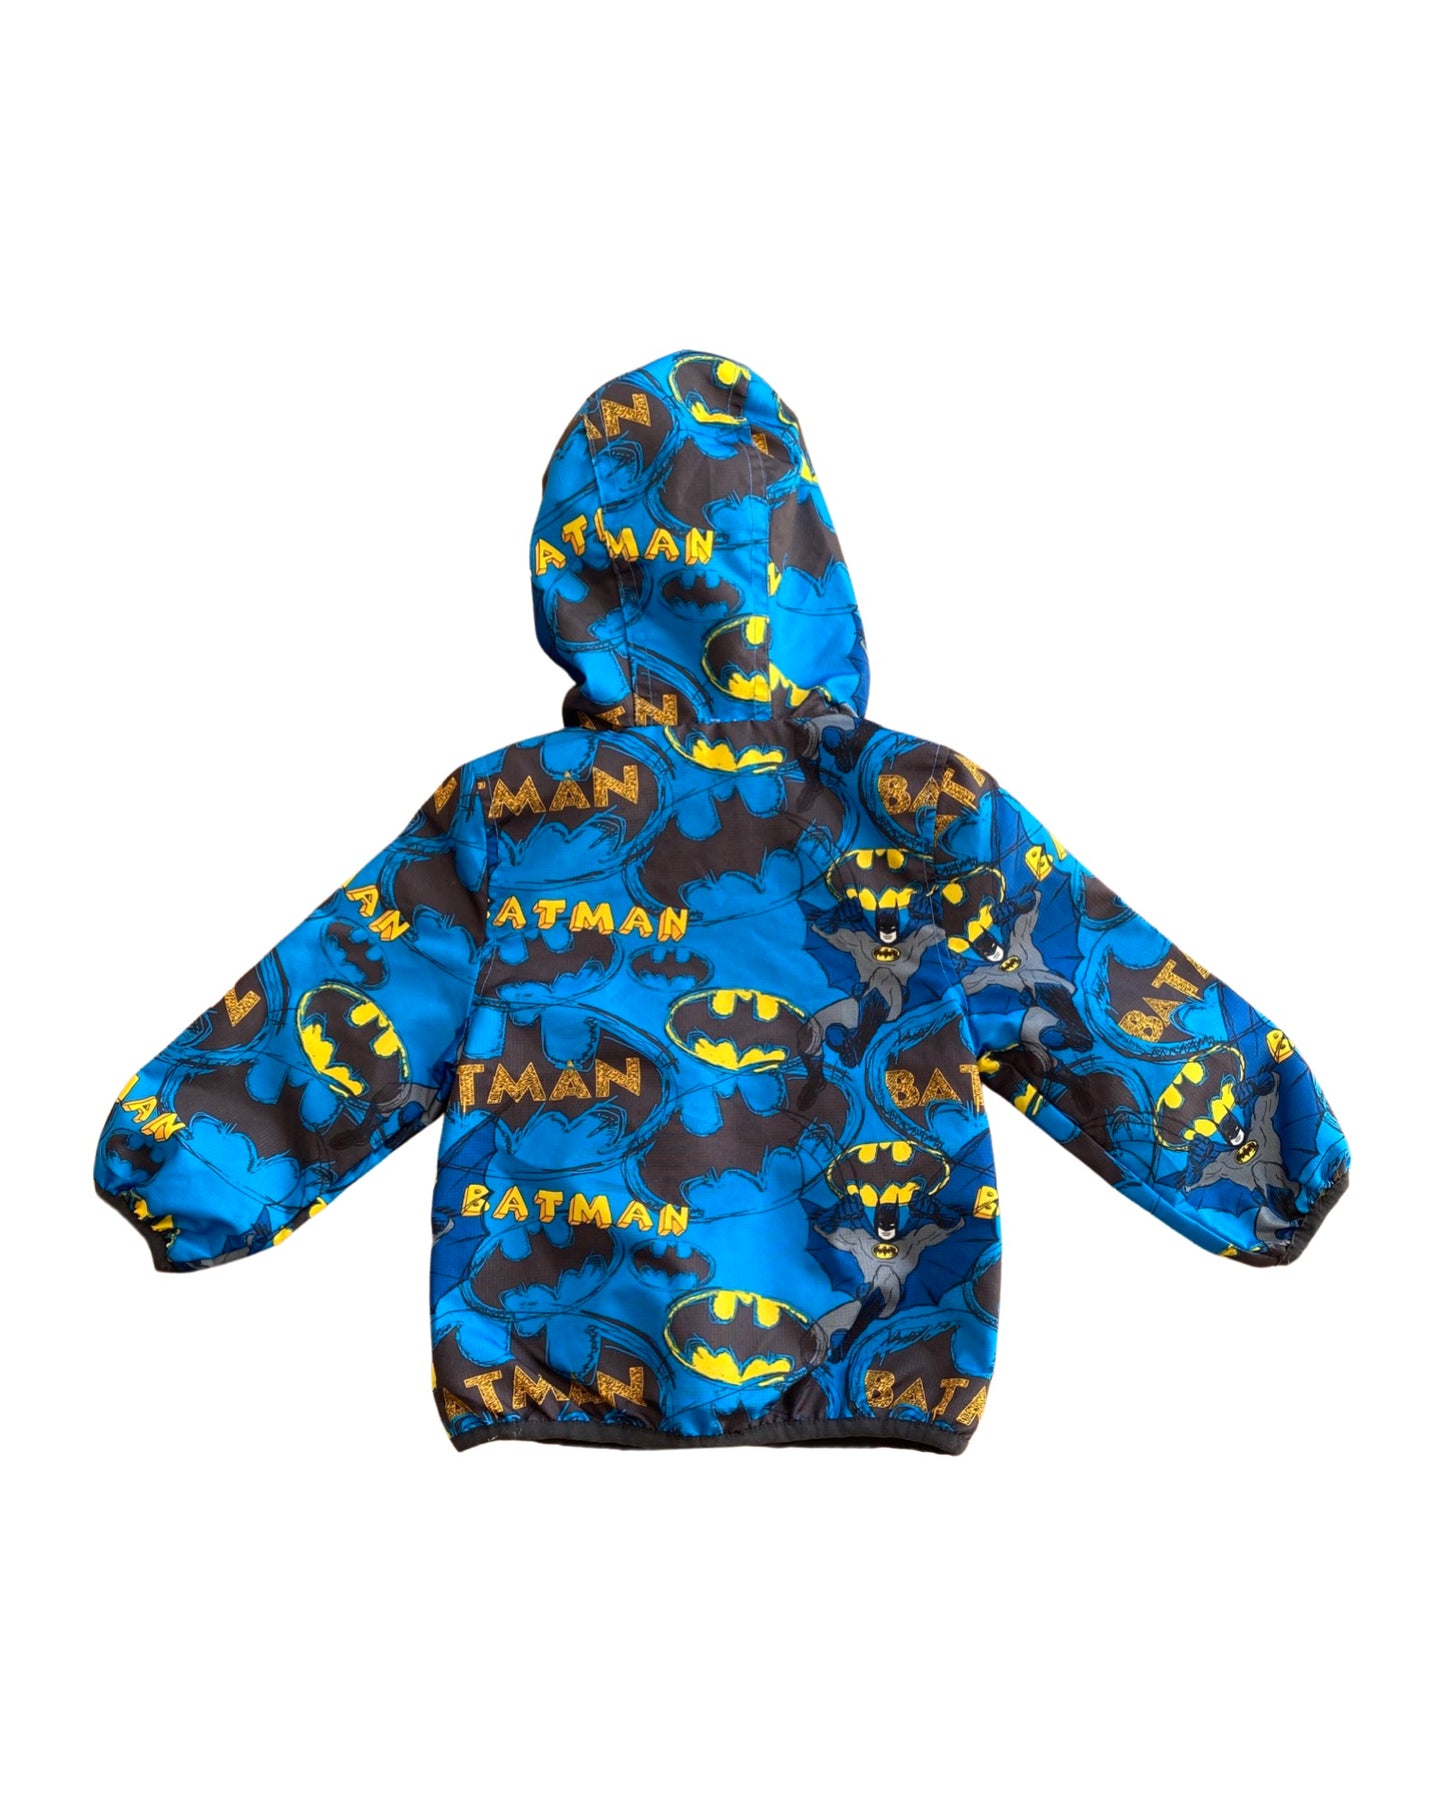 M&S Batman print rain jacket (9-12mths)